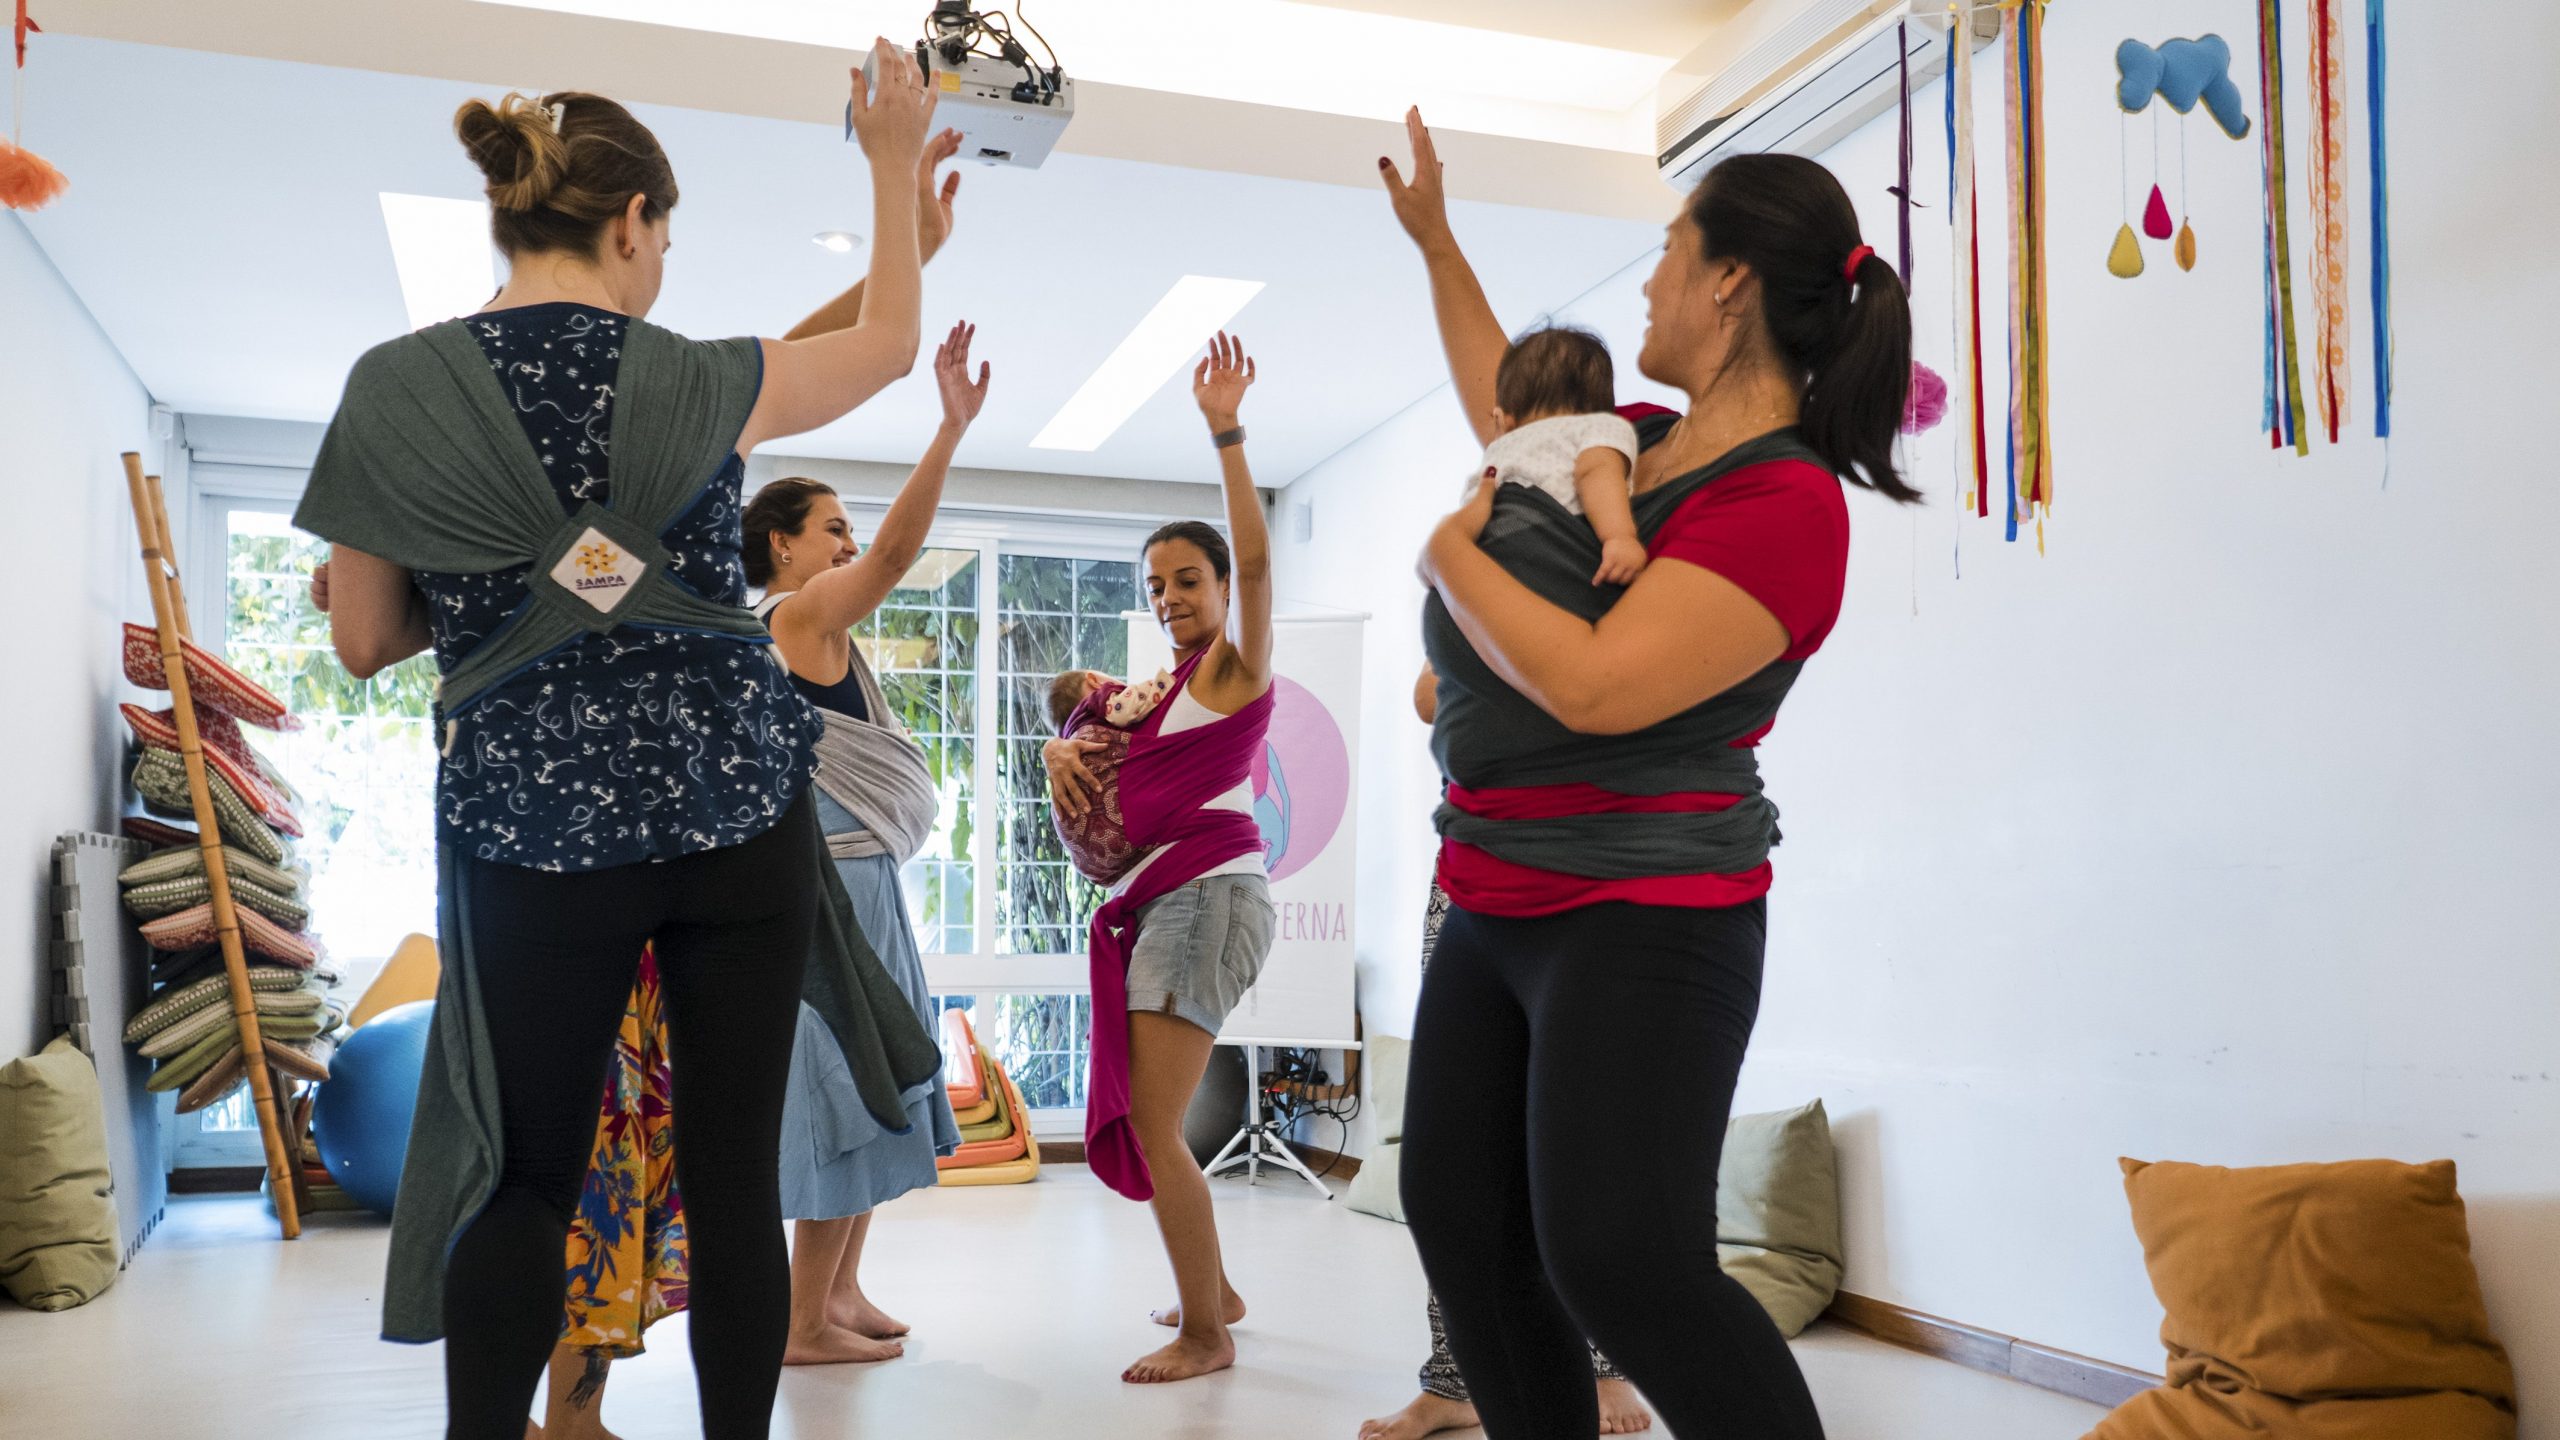 A Casa Moara promove diversas atividades para celebrar o maternar, entre elas a oficina de dança materna. Foto: Katia Ribeiro